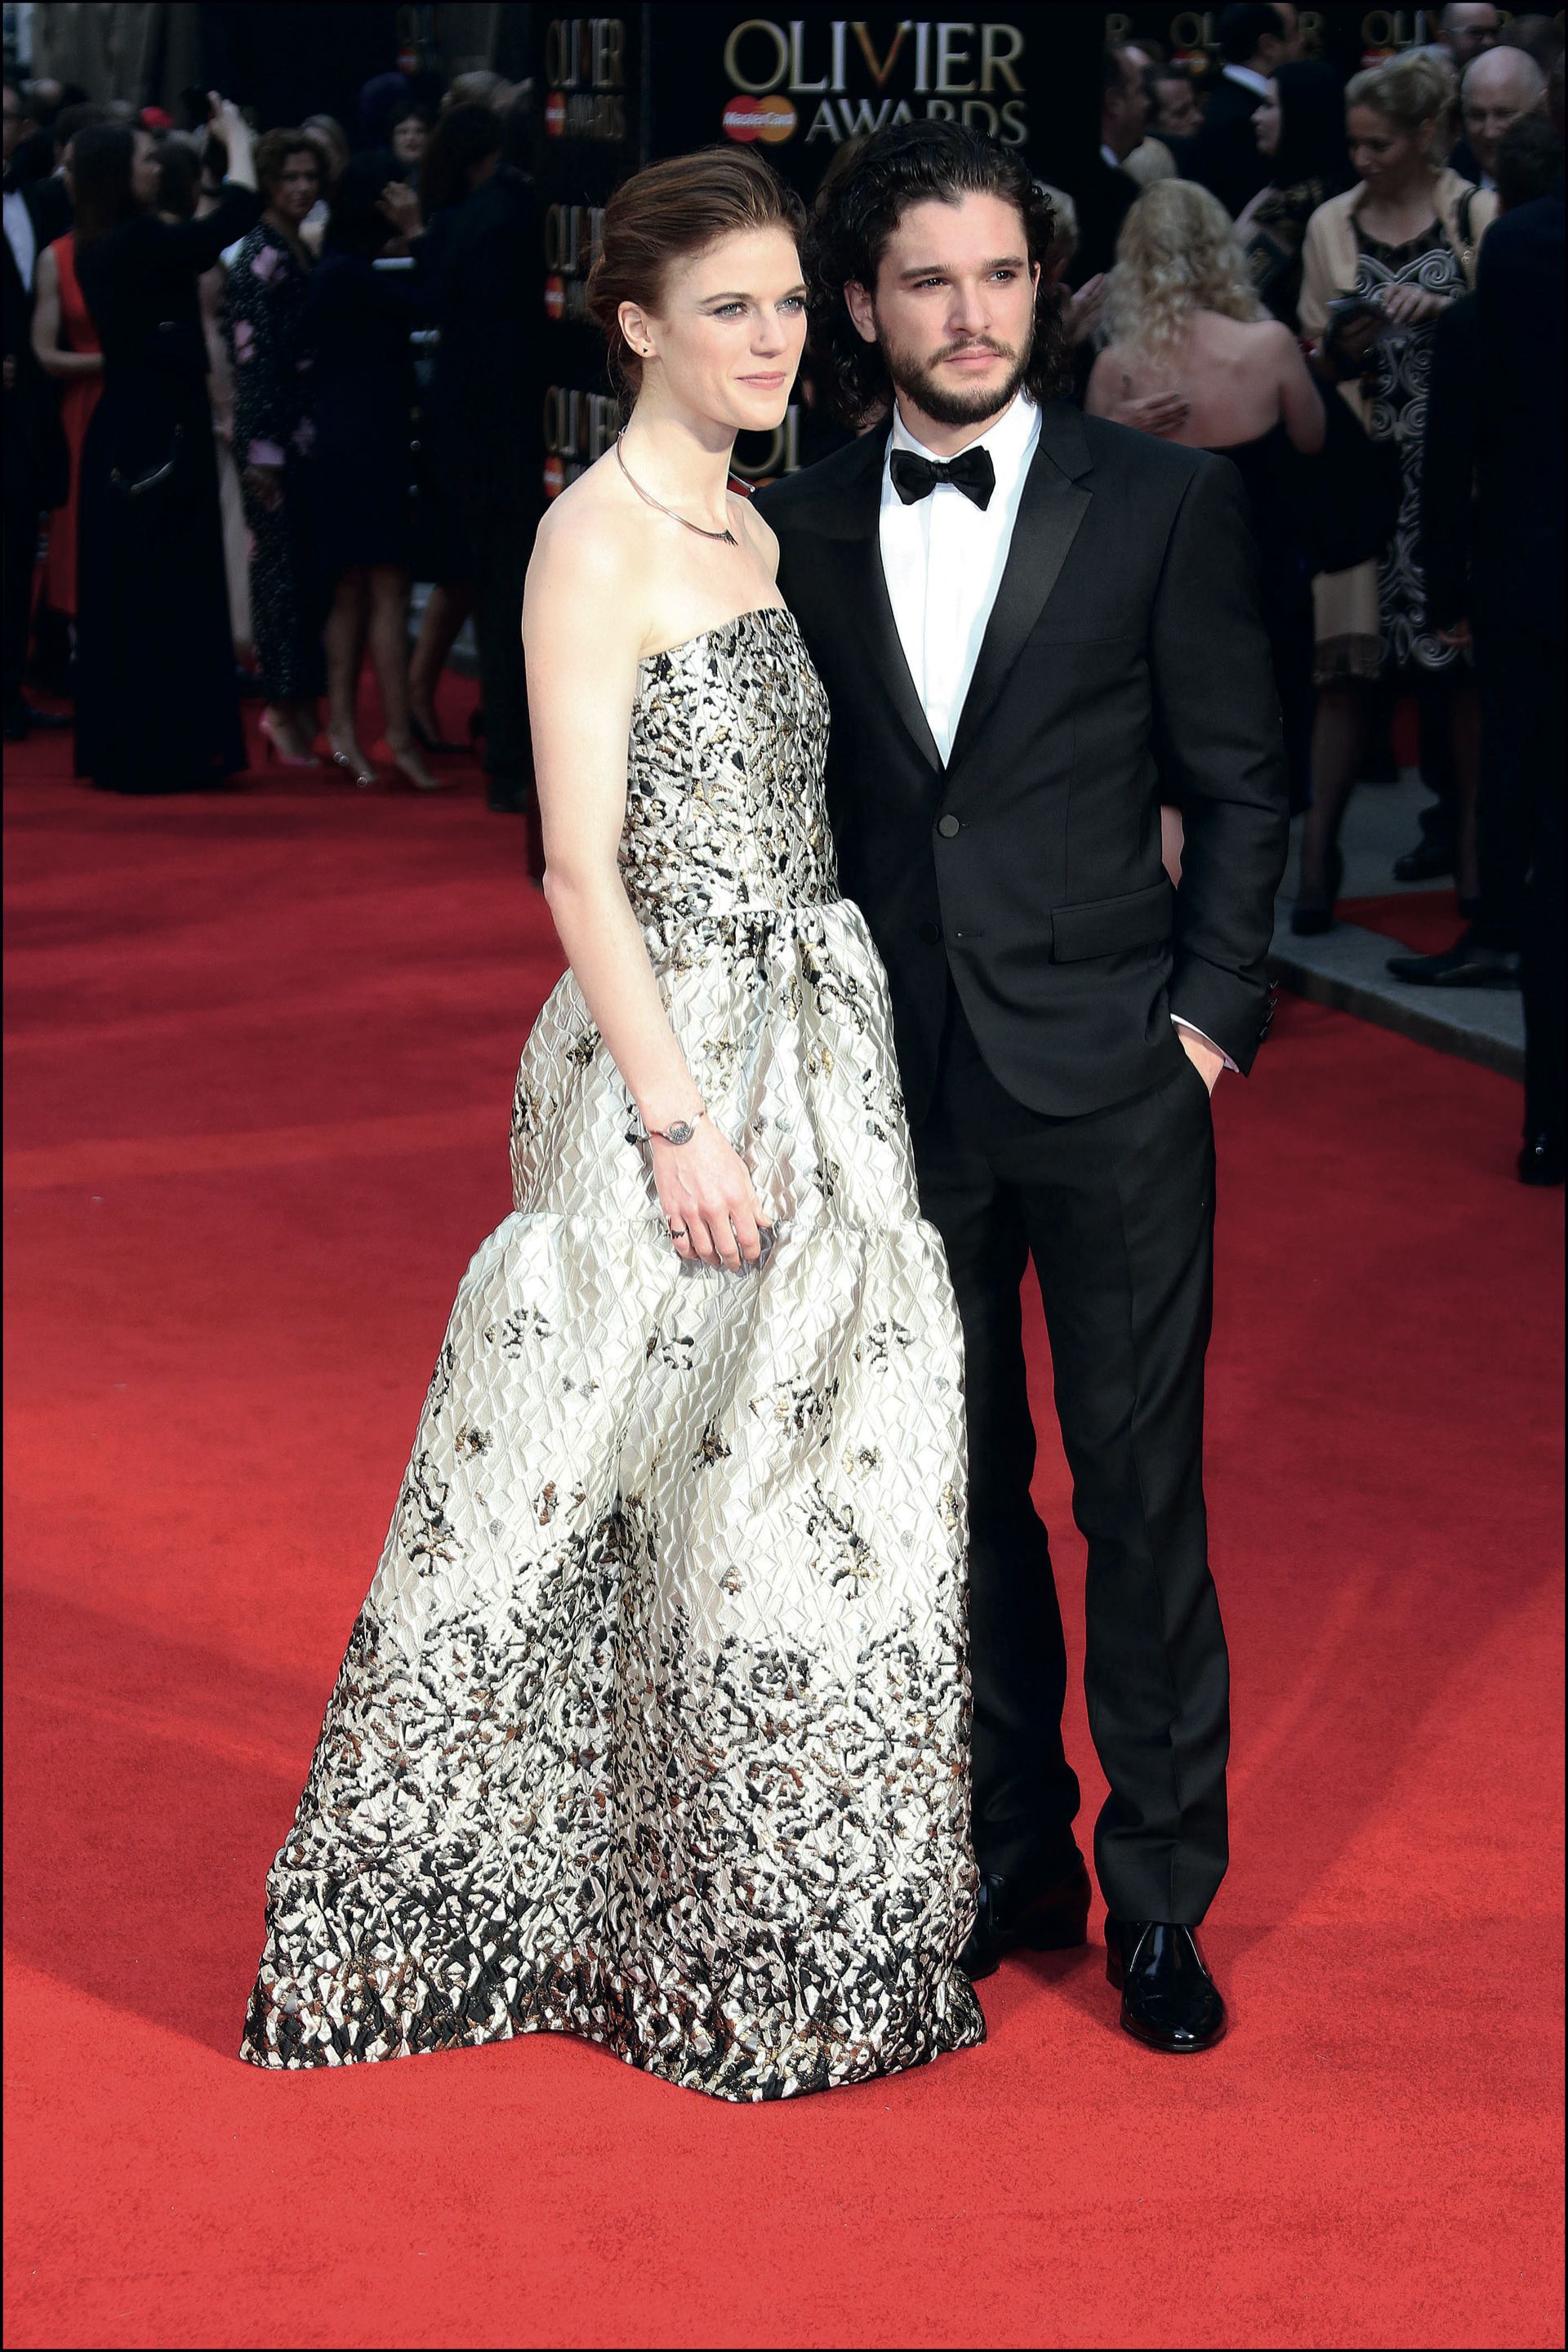 La pareja brilla en cada una de las red carpets que pisa. Aquí en la entrega de los Olivier Awards, en Londres